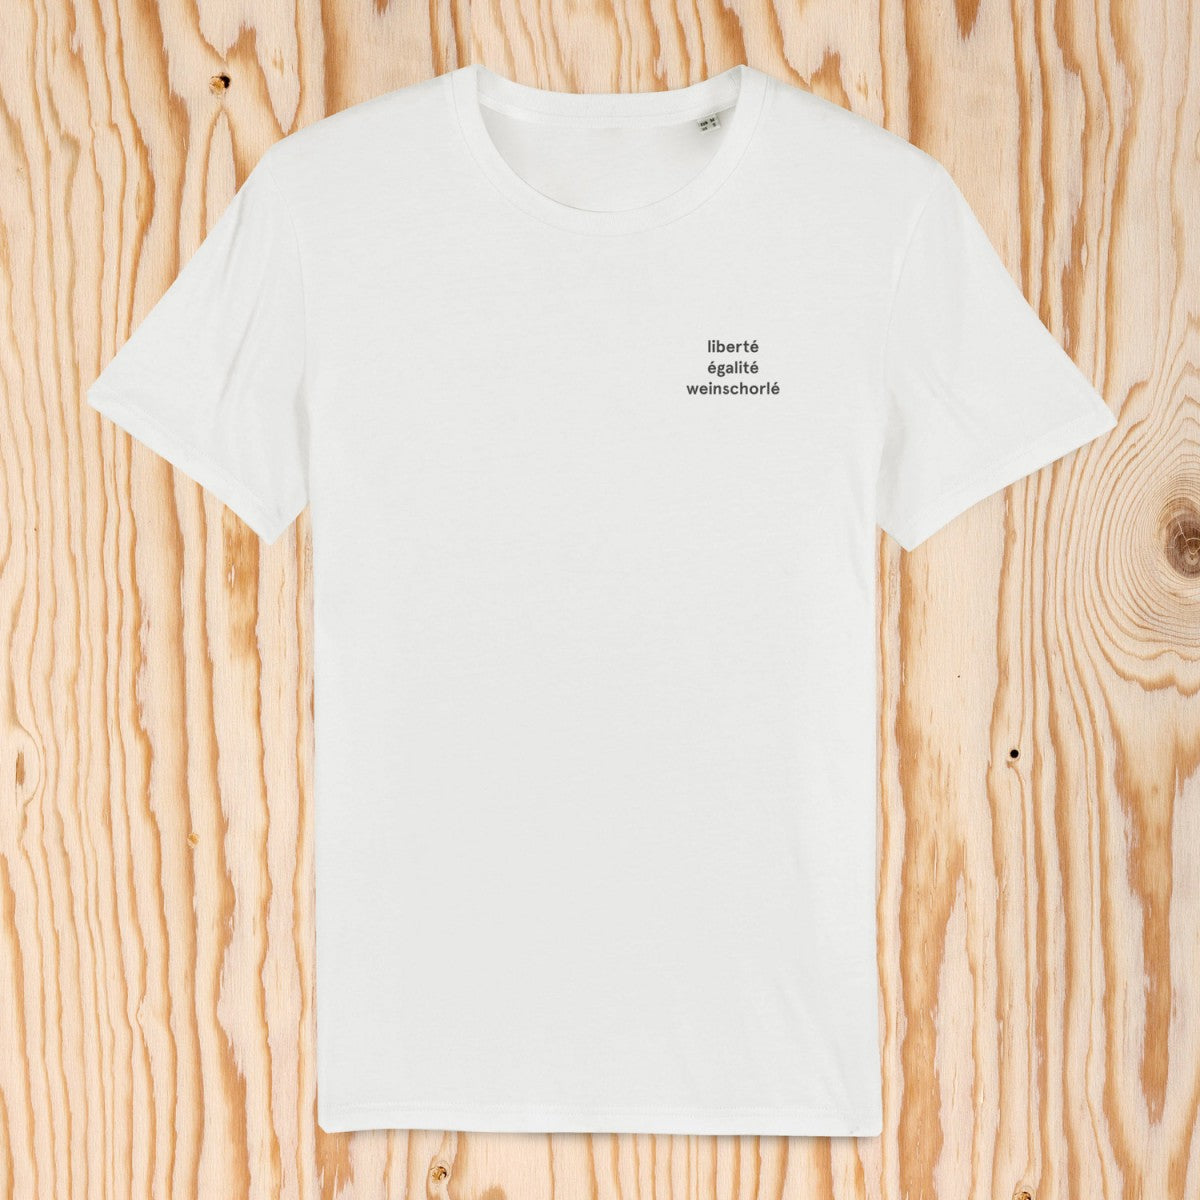 Selekkt Unisex T-Shirt "liberté égalité weinschorlé" - weiß